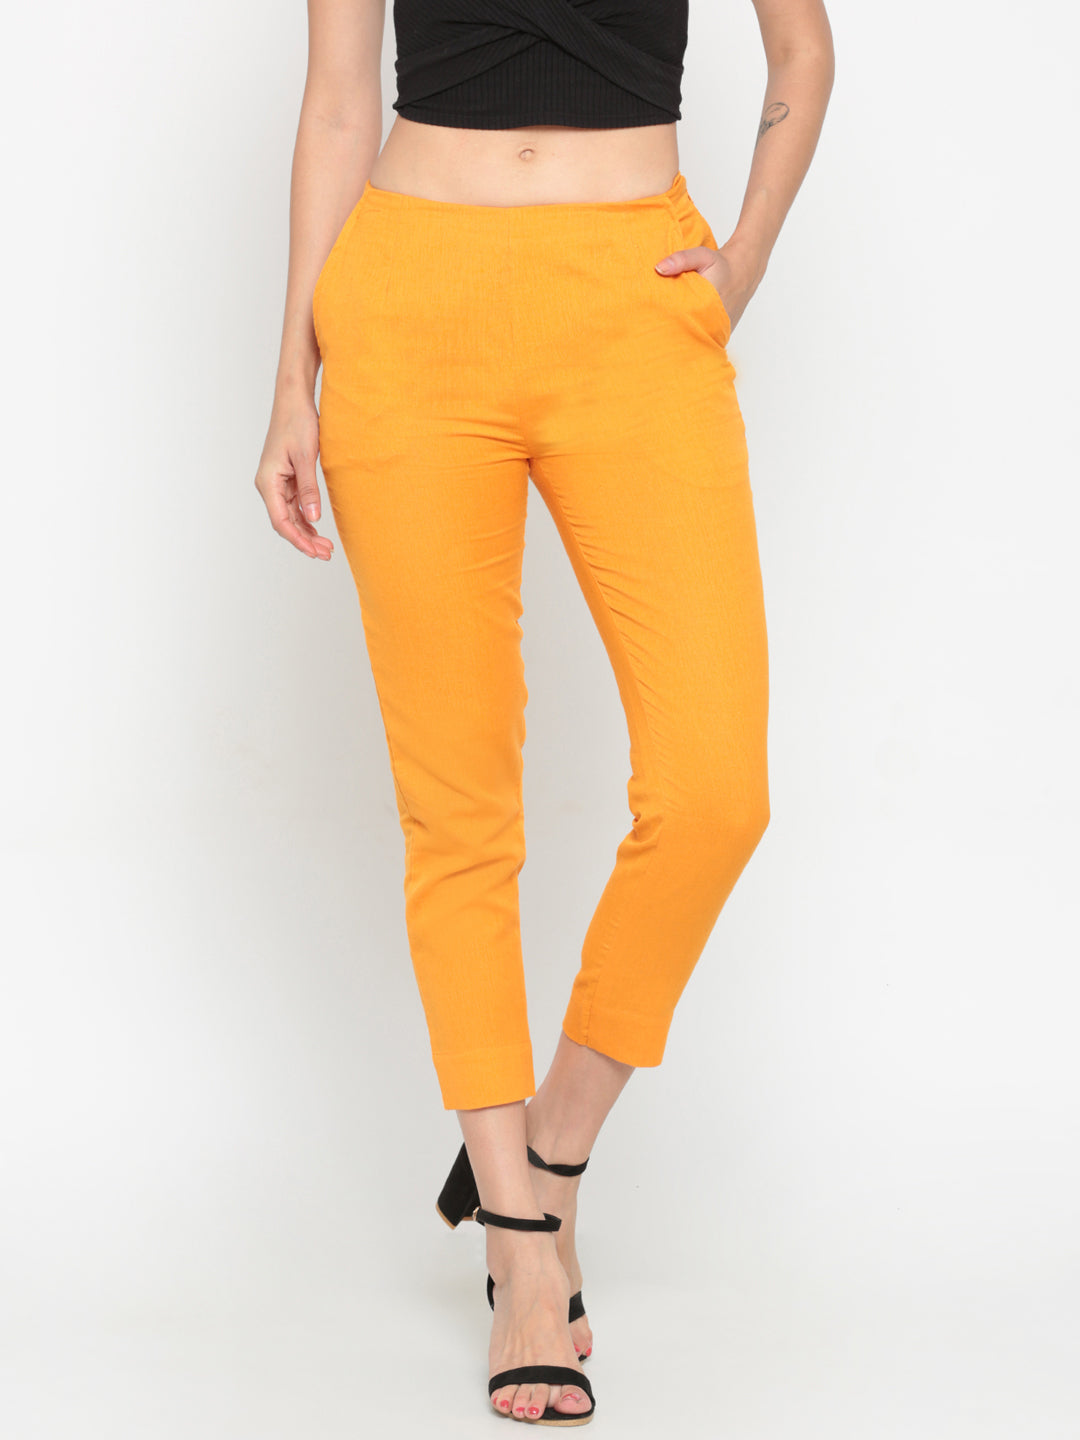 Buy YOLKI Orange Palazzo Pant for womens Ethinic flared Bottom Size XL at  Amazonin